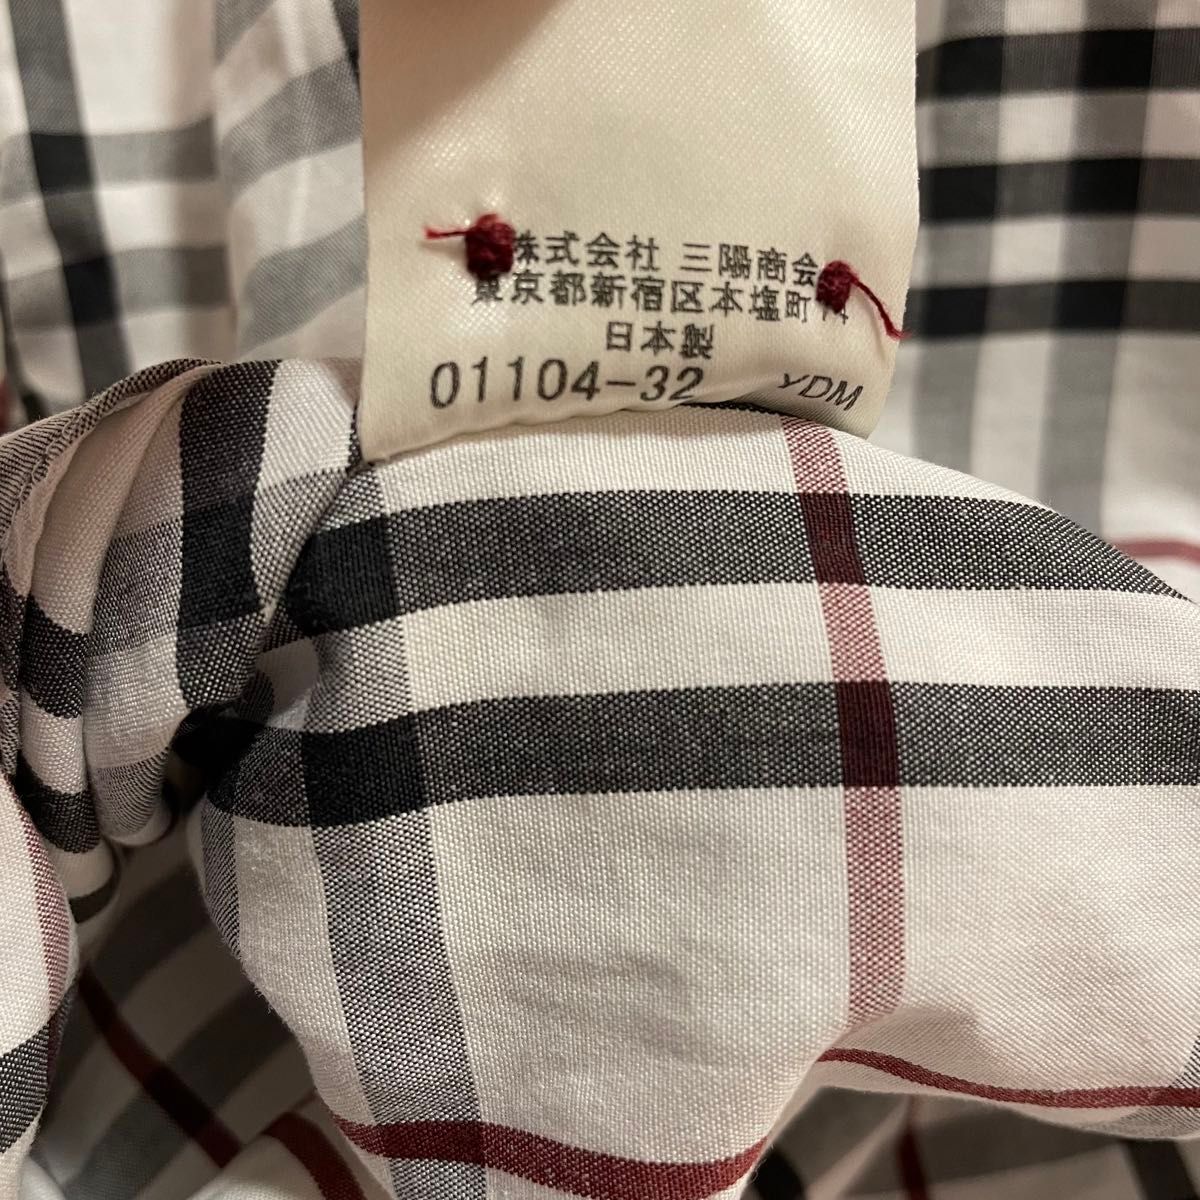 バーバリー☆ナイトロゴ刺繍☆ノバチェック柄長袖ポロシャツ M 白 